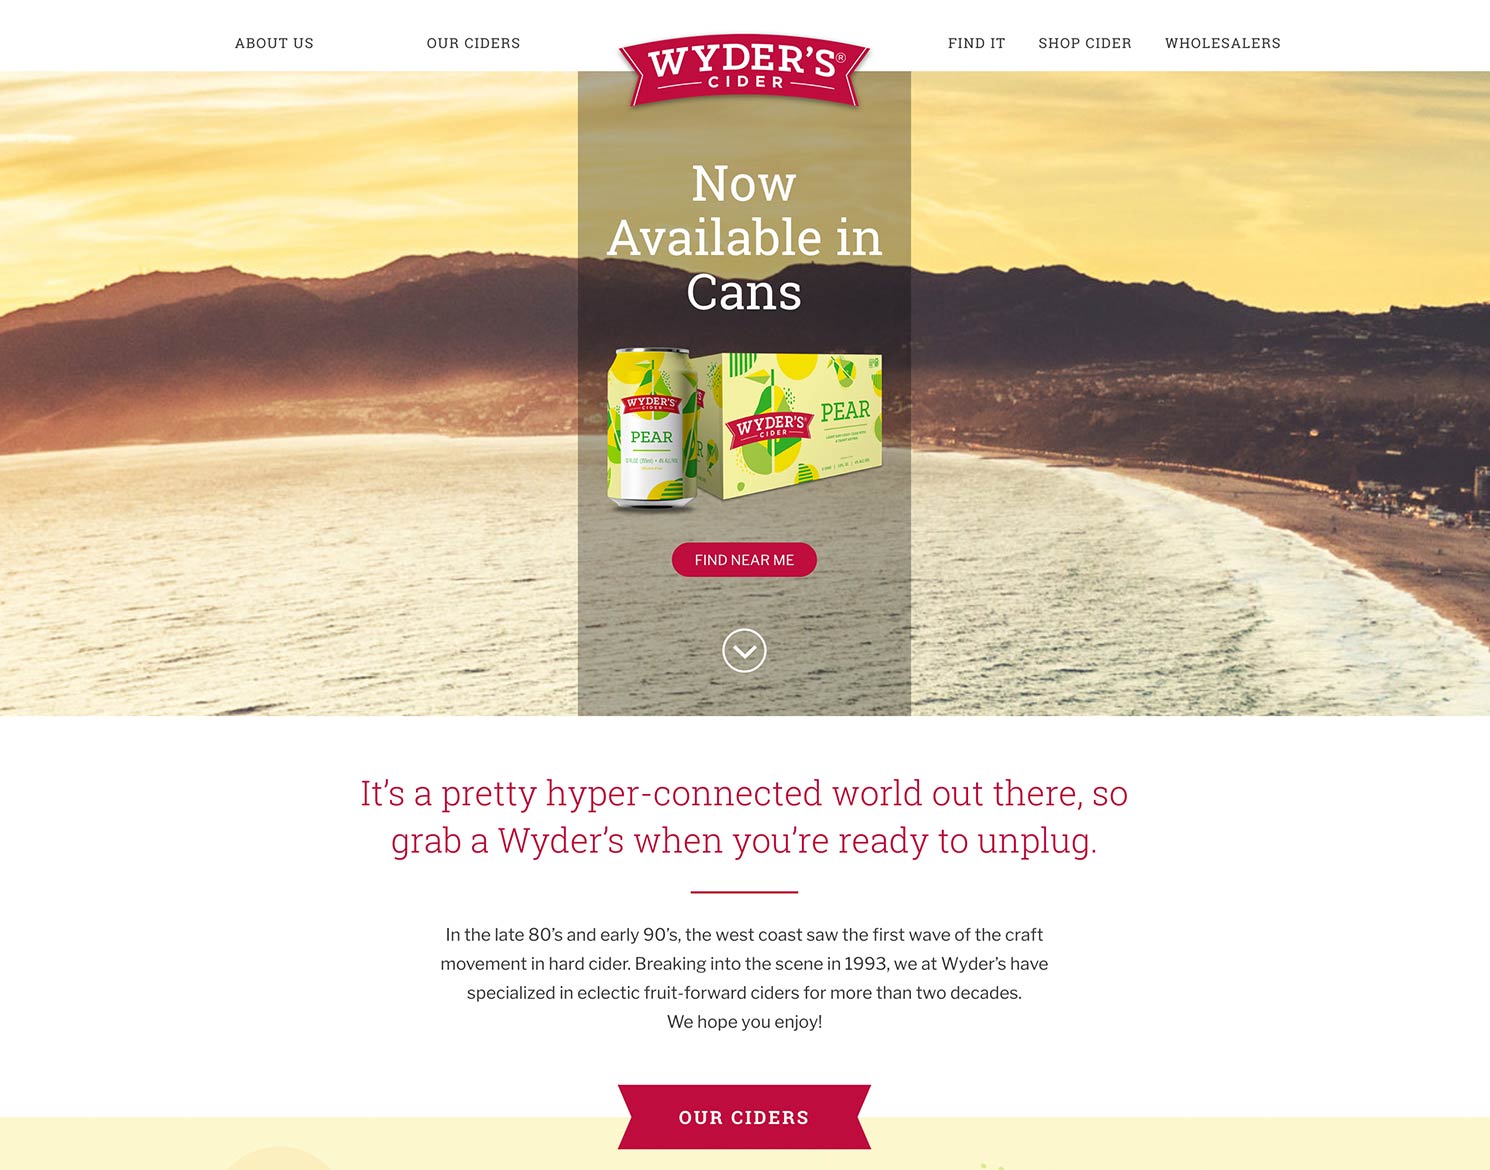 Wyder's Cider website